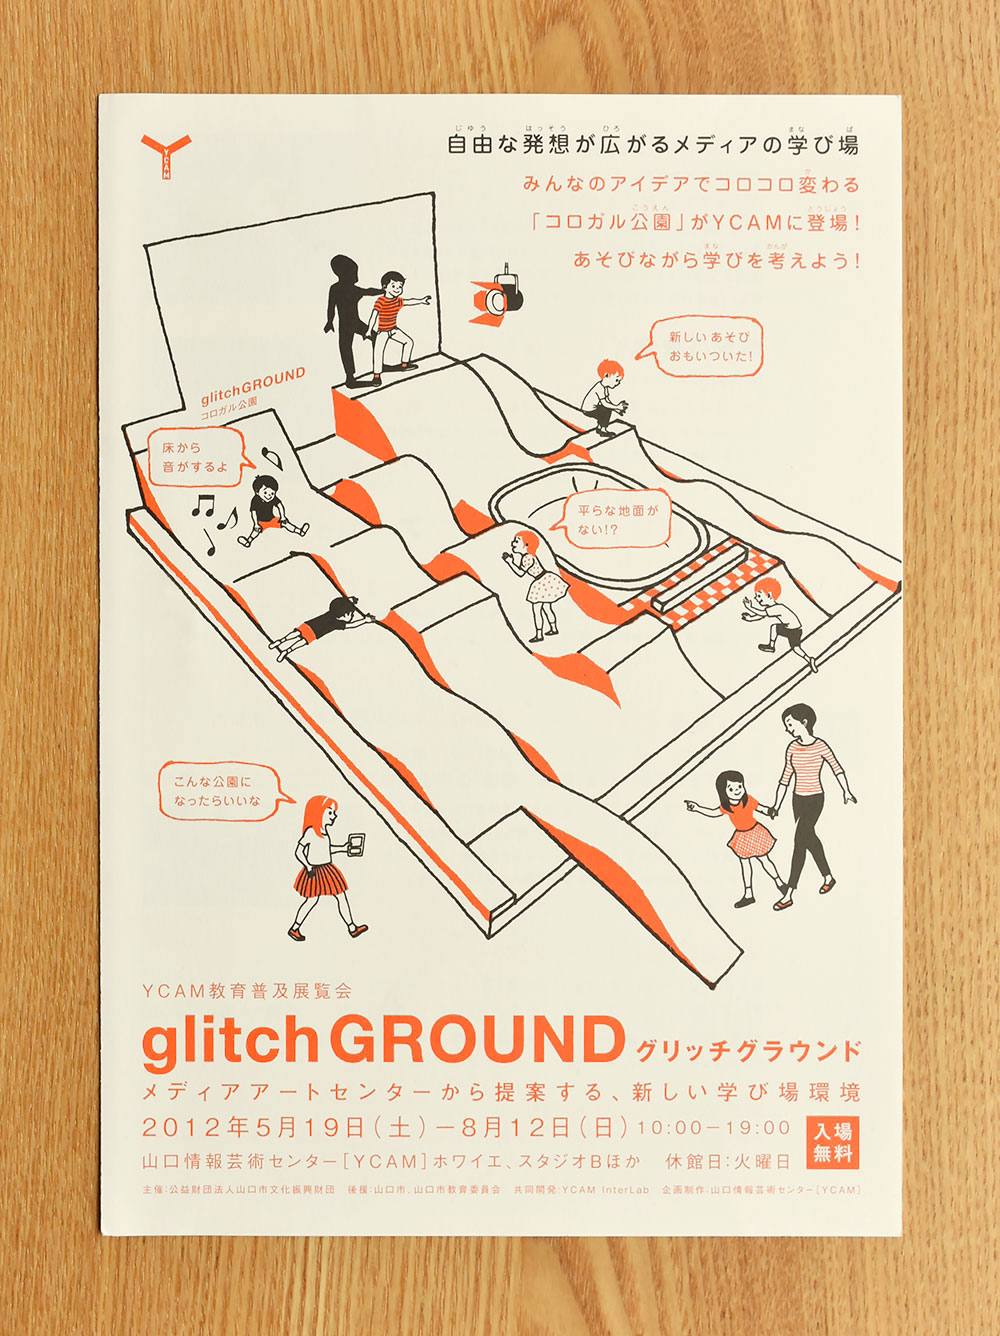 山口情報芸術センター［YCAM］　glitch GROUND「コロガル公園」　パンフレットデザイン